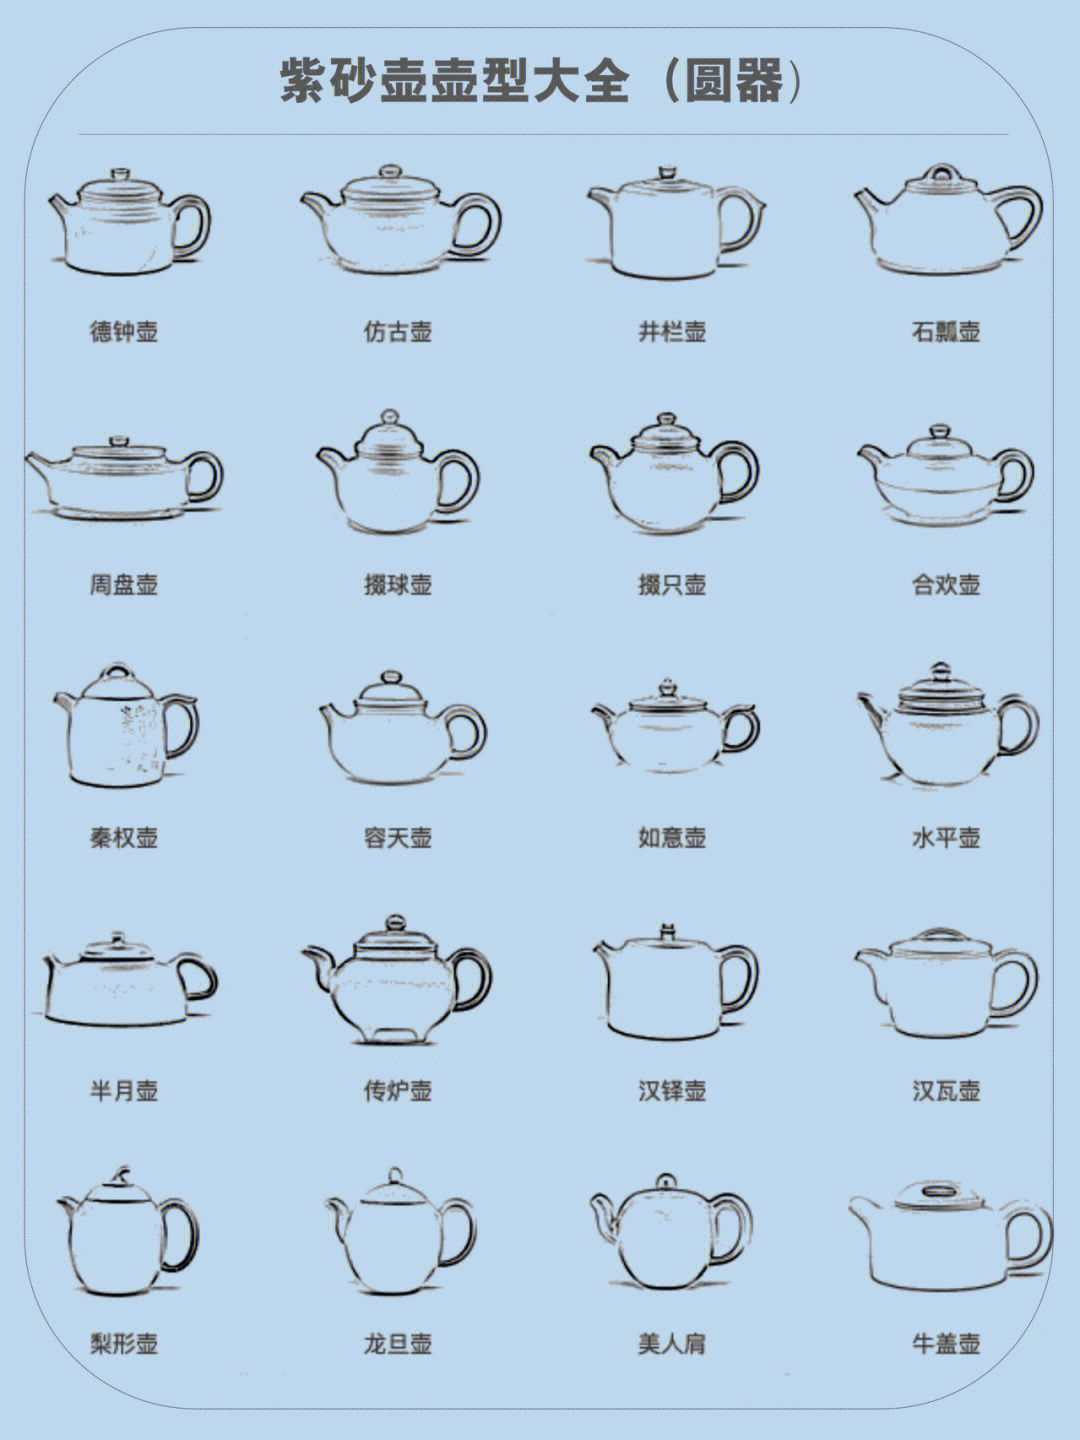 各种茶壶的图片名称图片